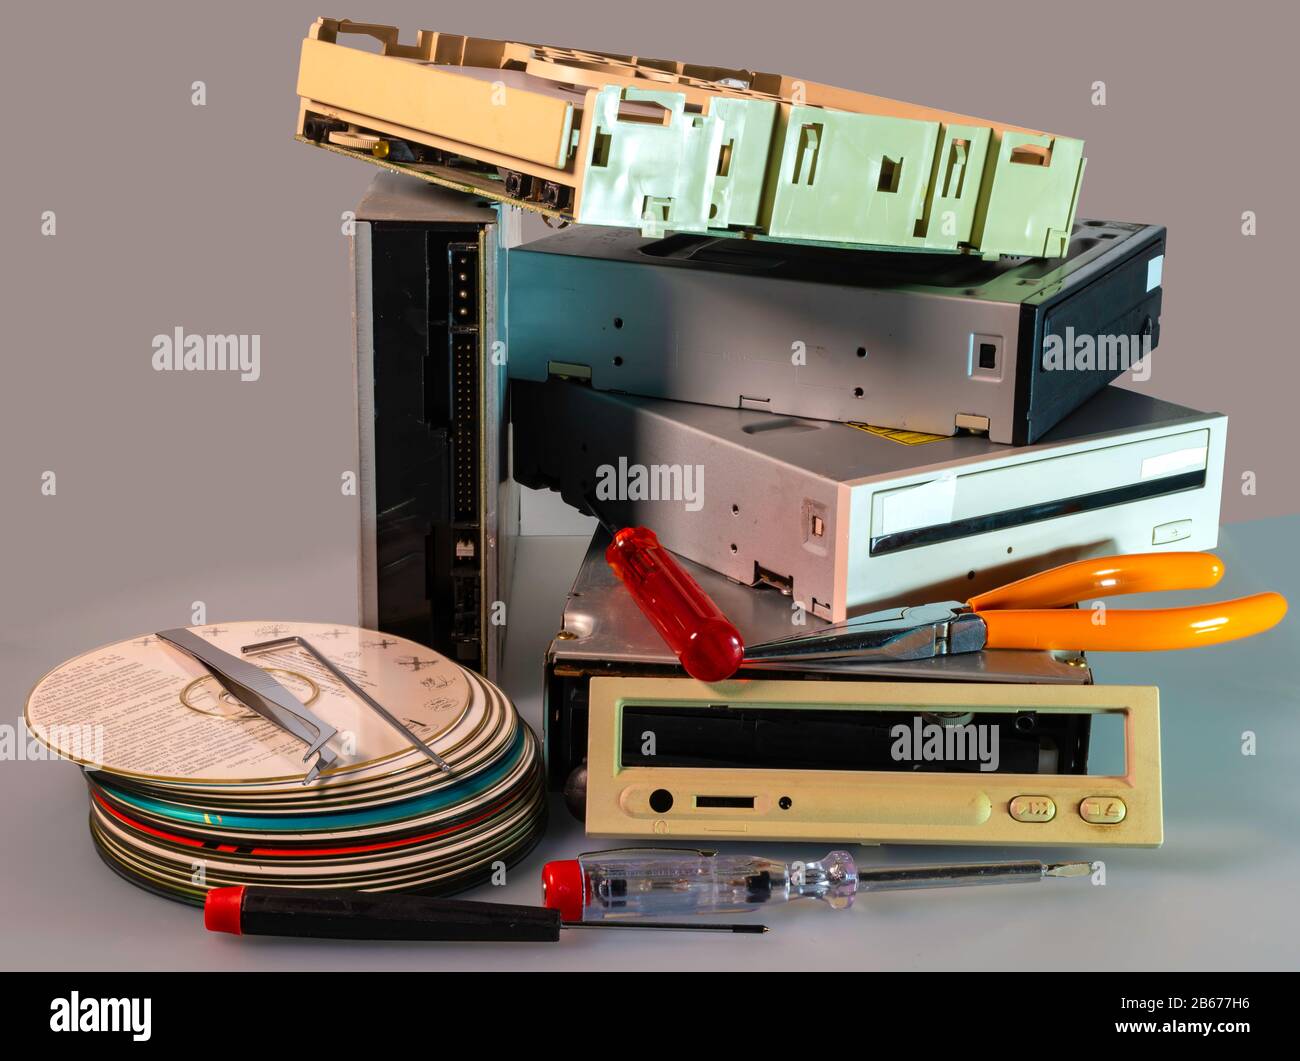 Pila de unidades de disco duro SATA, ATA antiguas y cd de controladores desmontados. En un disco de cartón muestra advertencias en varios idiomas para su uso en CD regrabable wri Foto de stock